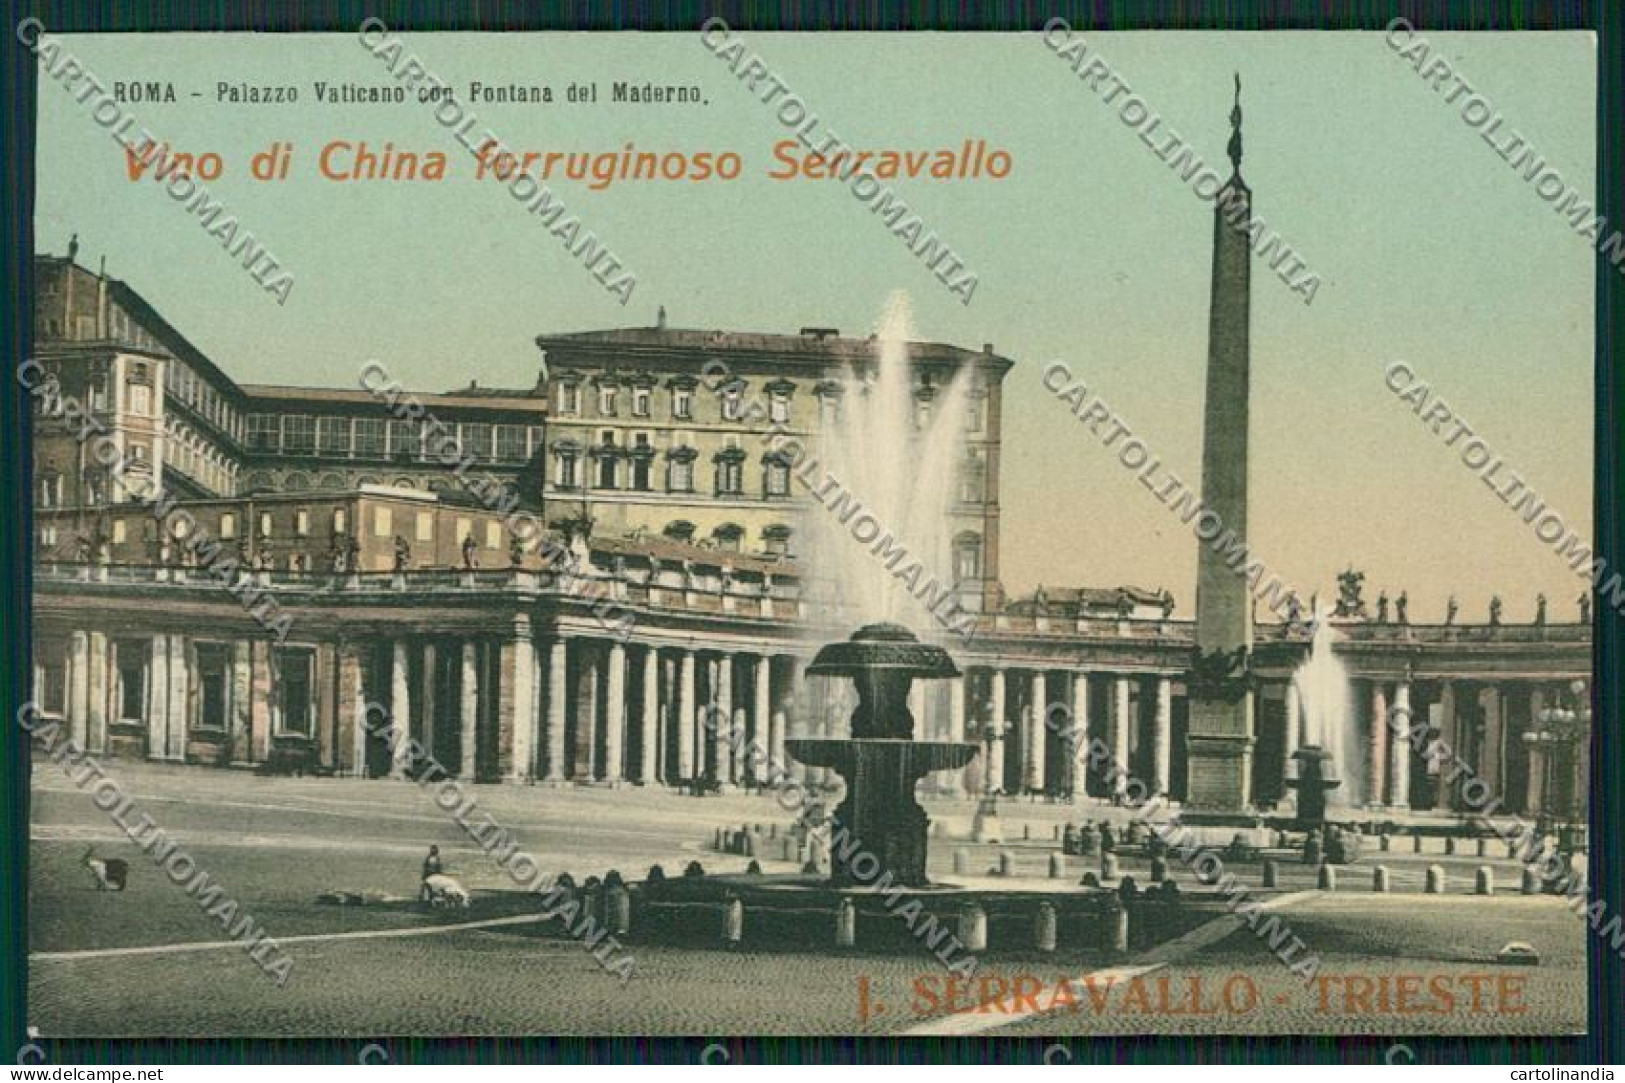 Trieste Vino China Ferruginoso Serravallo Pubblicitaria Roma Cartolina ZC0934 - Trieste